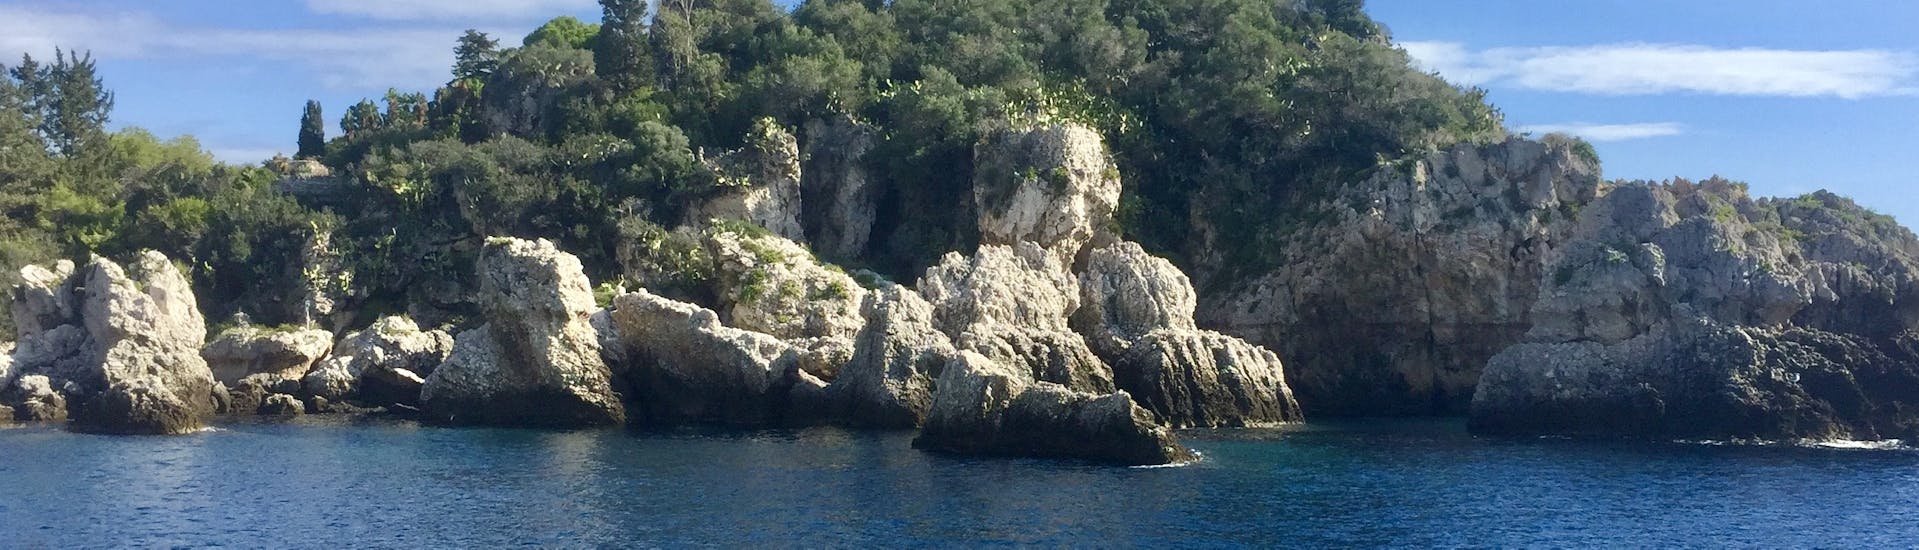 Une formation rocheuse que vous pouvez voir lors de la Balade en bateau à Taormine et Isola Bella avec Snorkeling avec SAT Group Excursions Taormina.